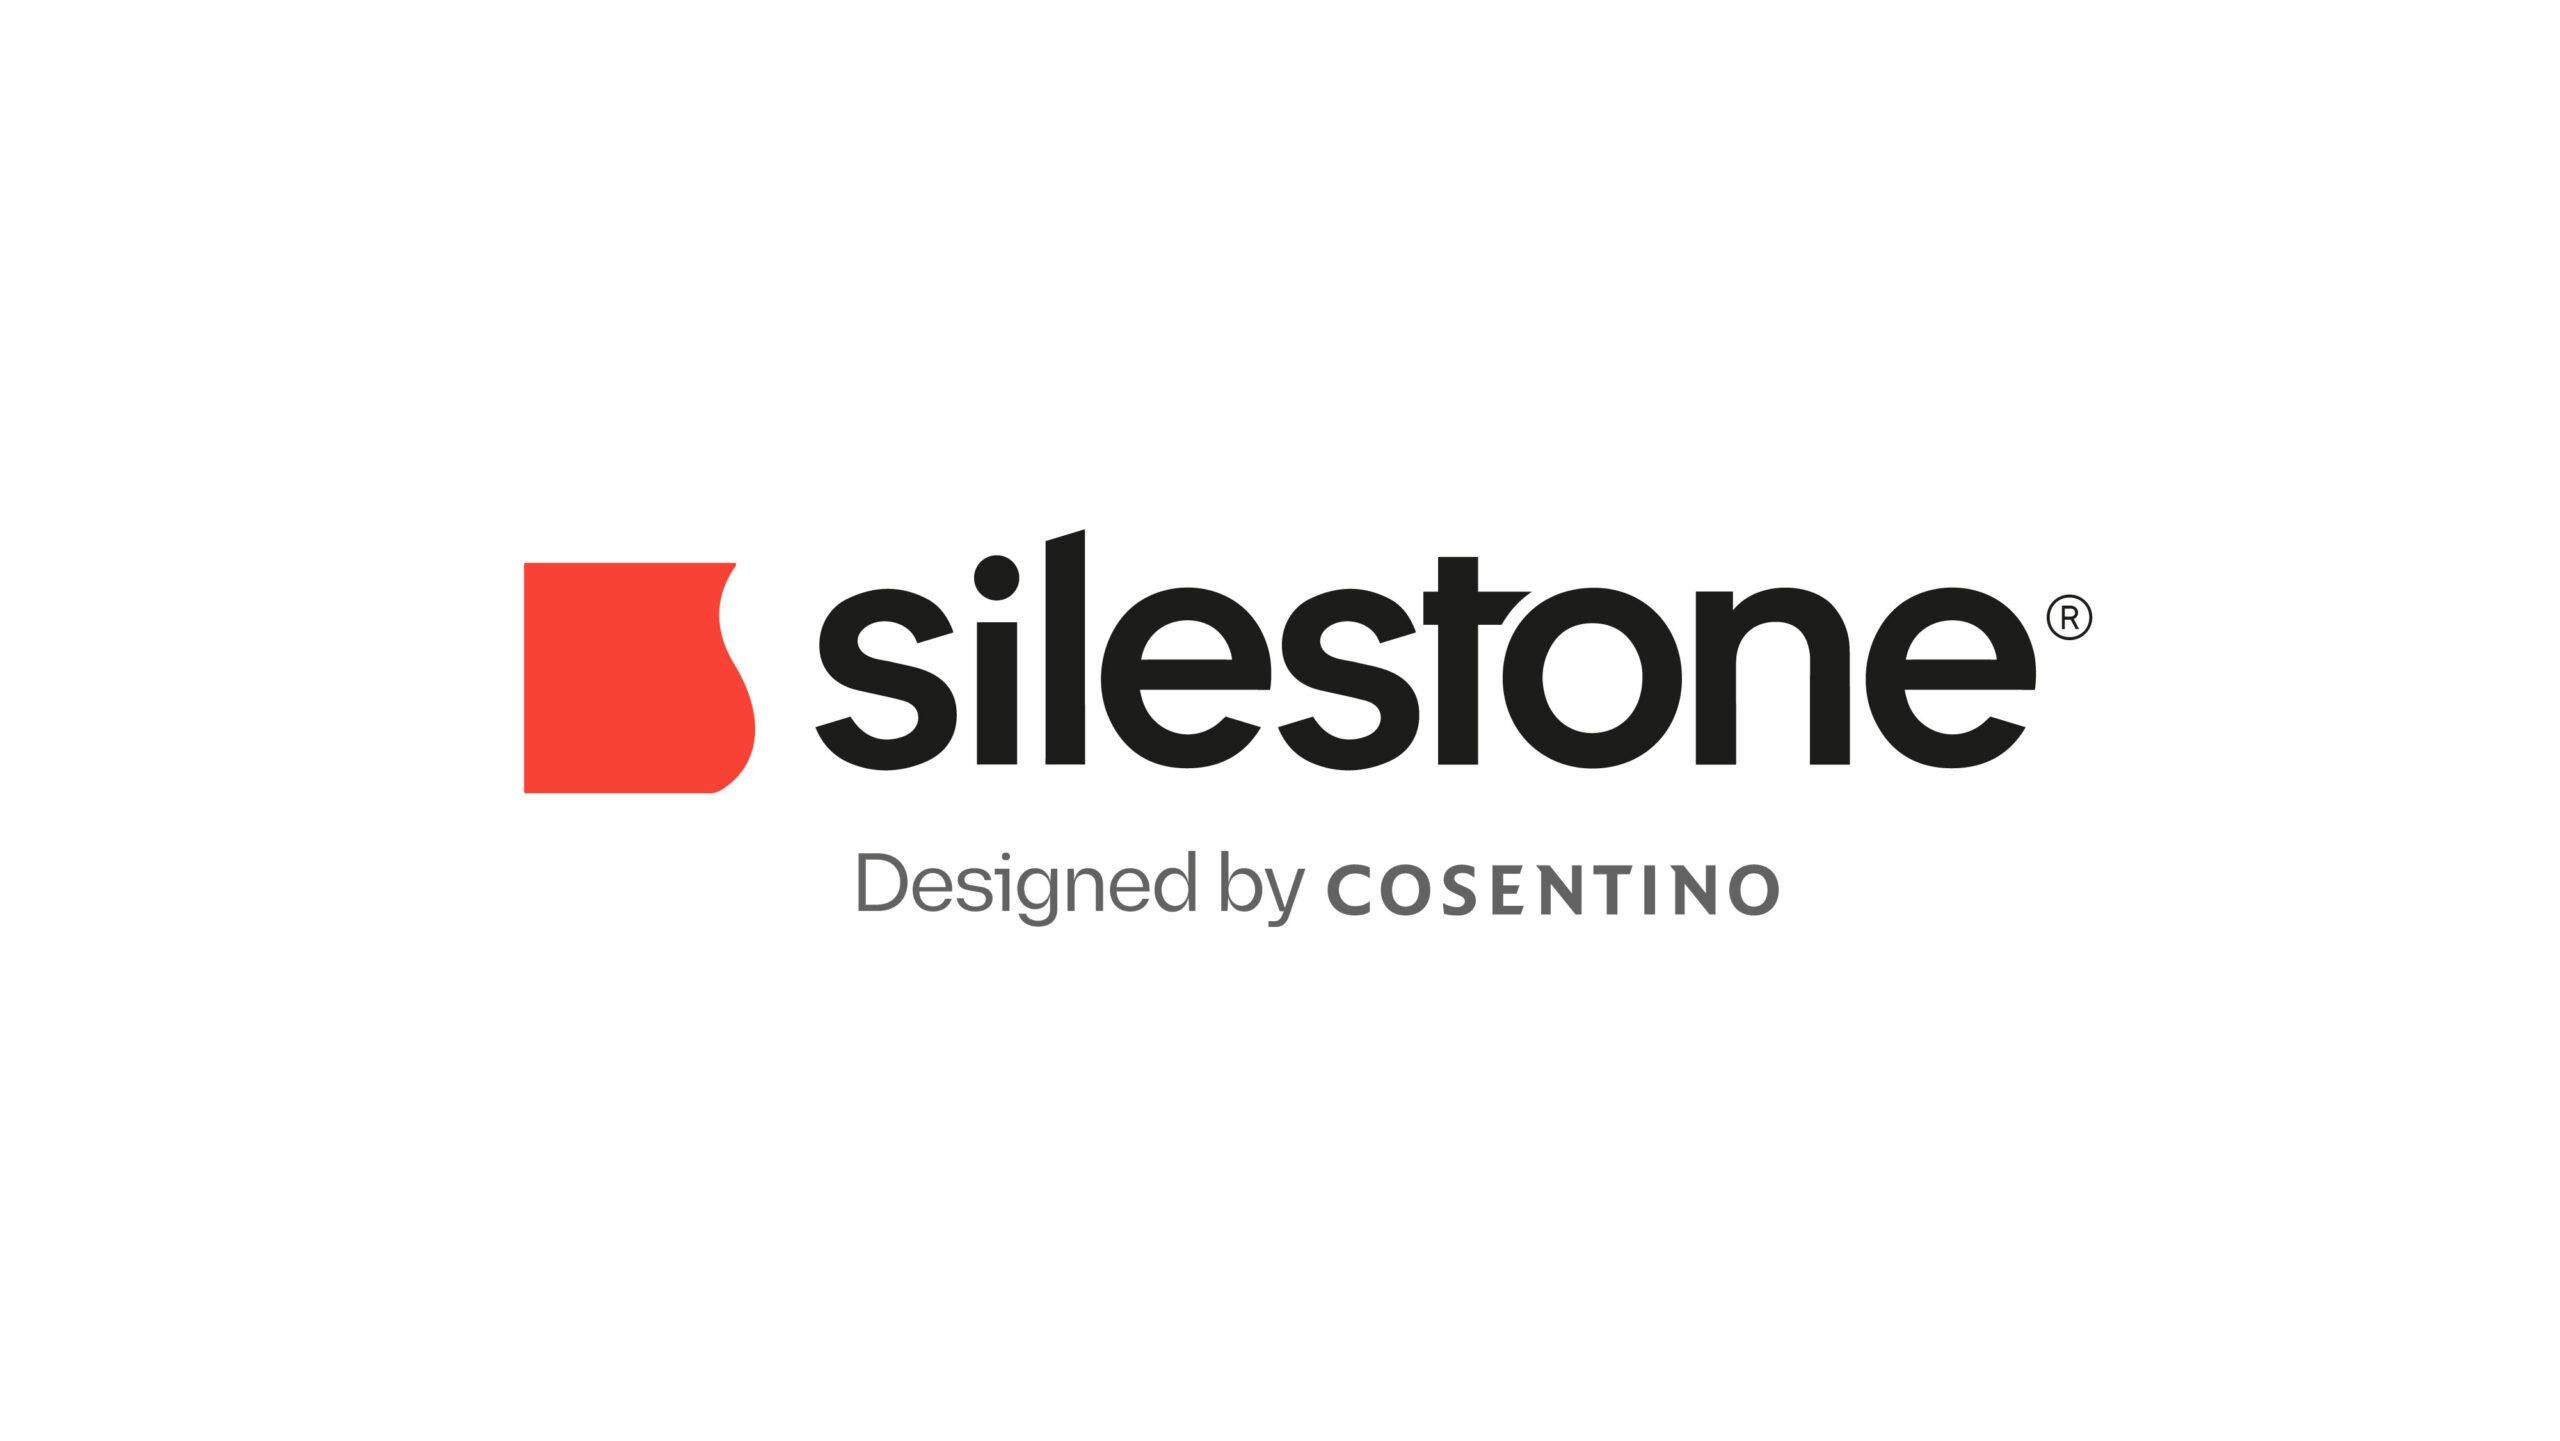 Numéro d'image 32 de la section actuelle de Cosentino présente la nouvelle image de Silestone® de Cosentino France